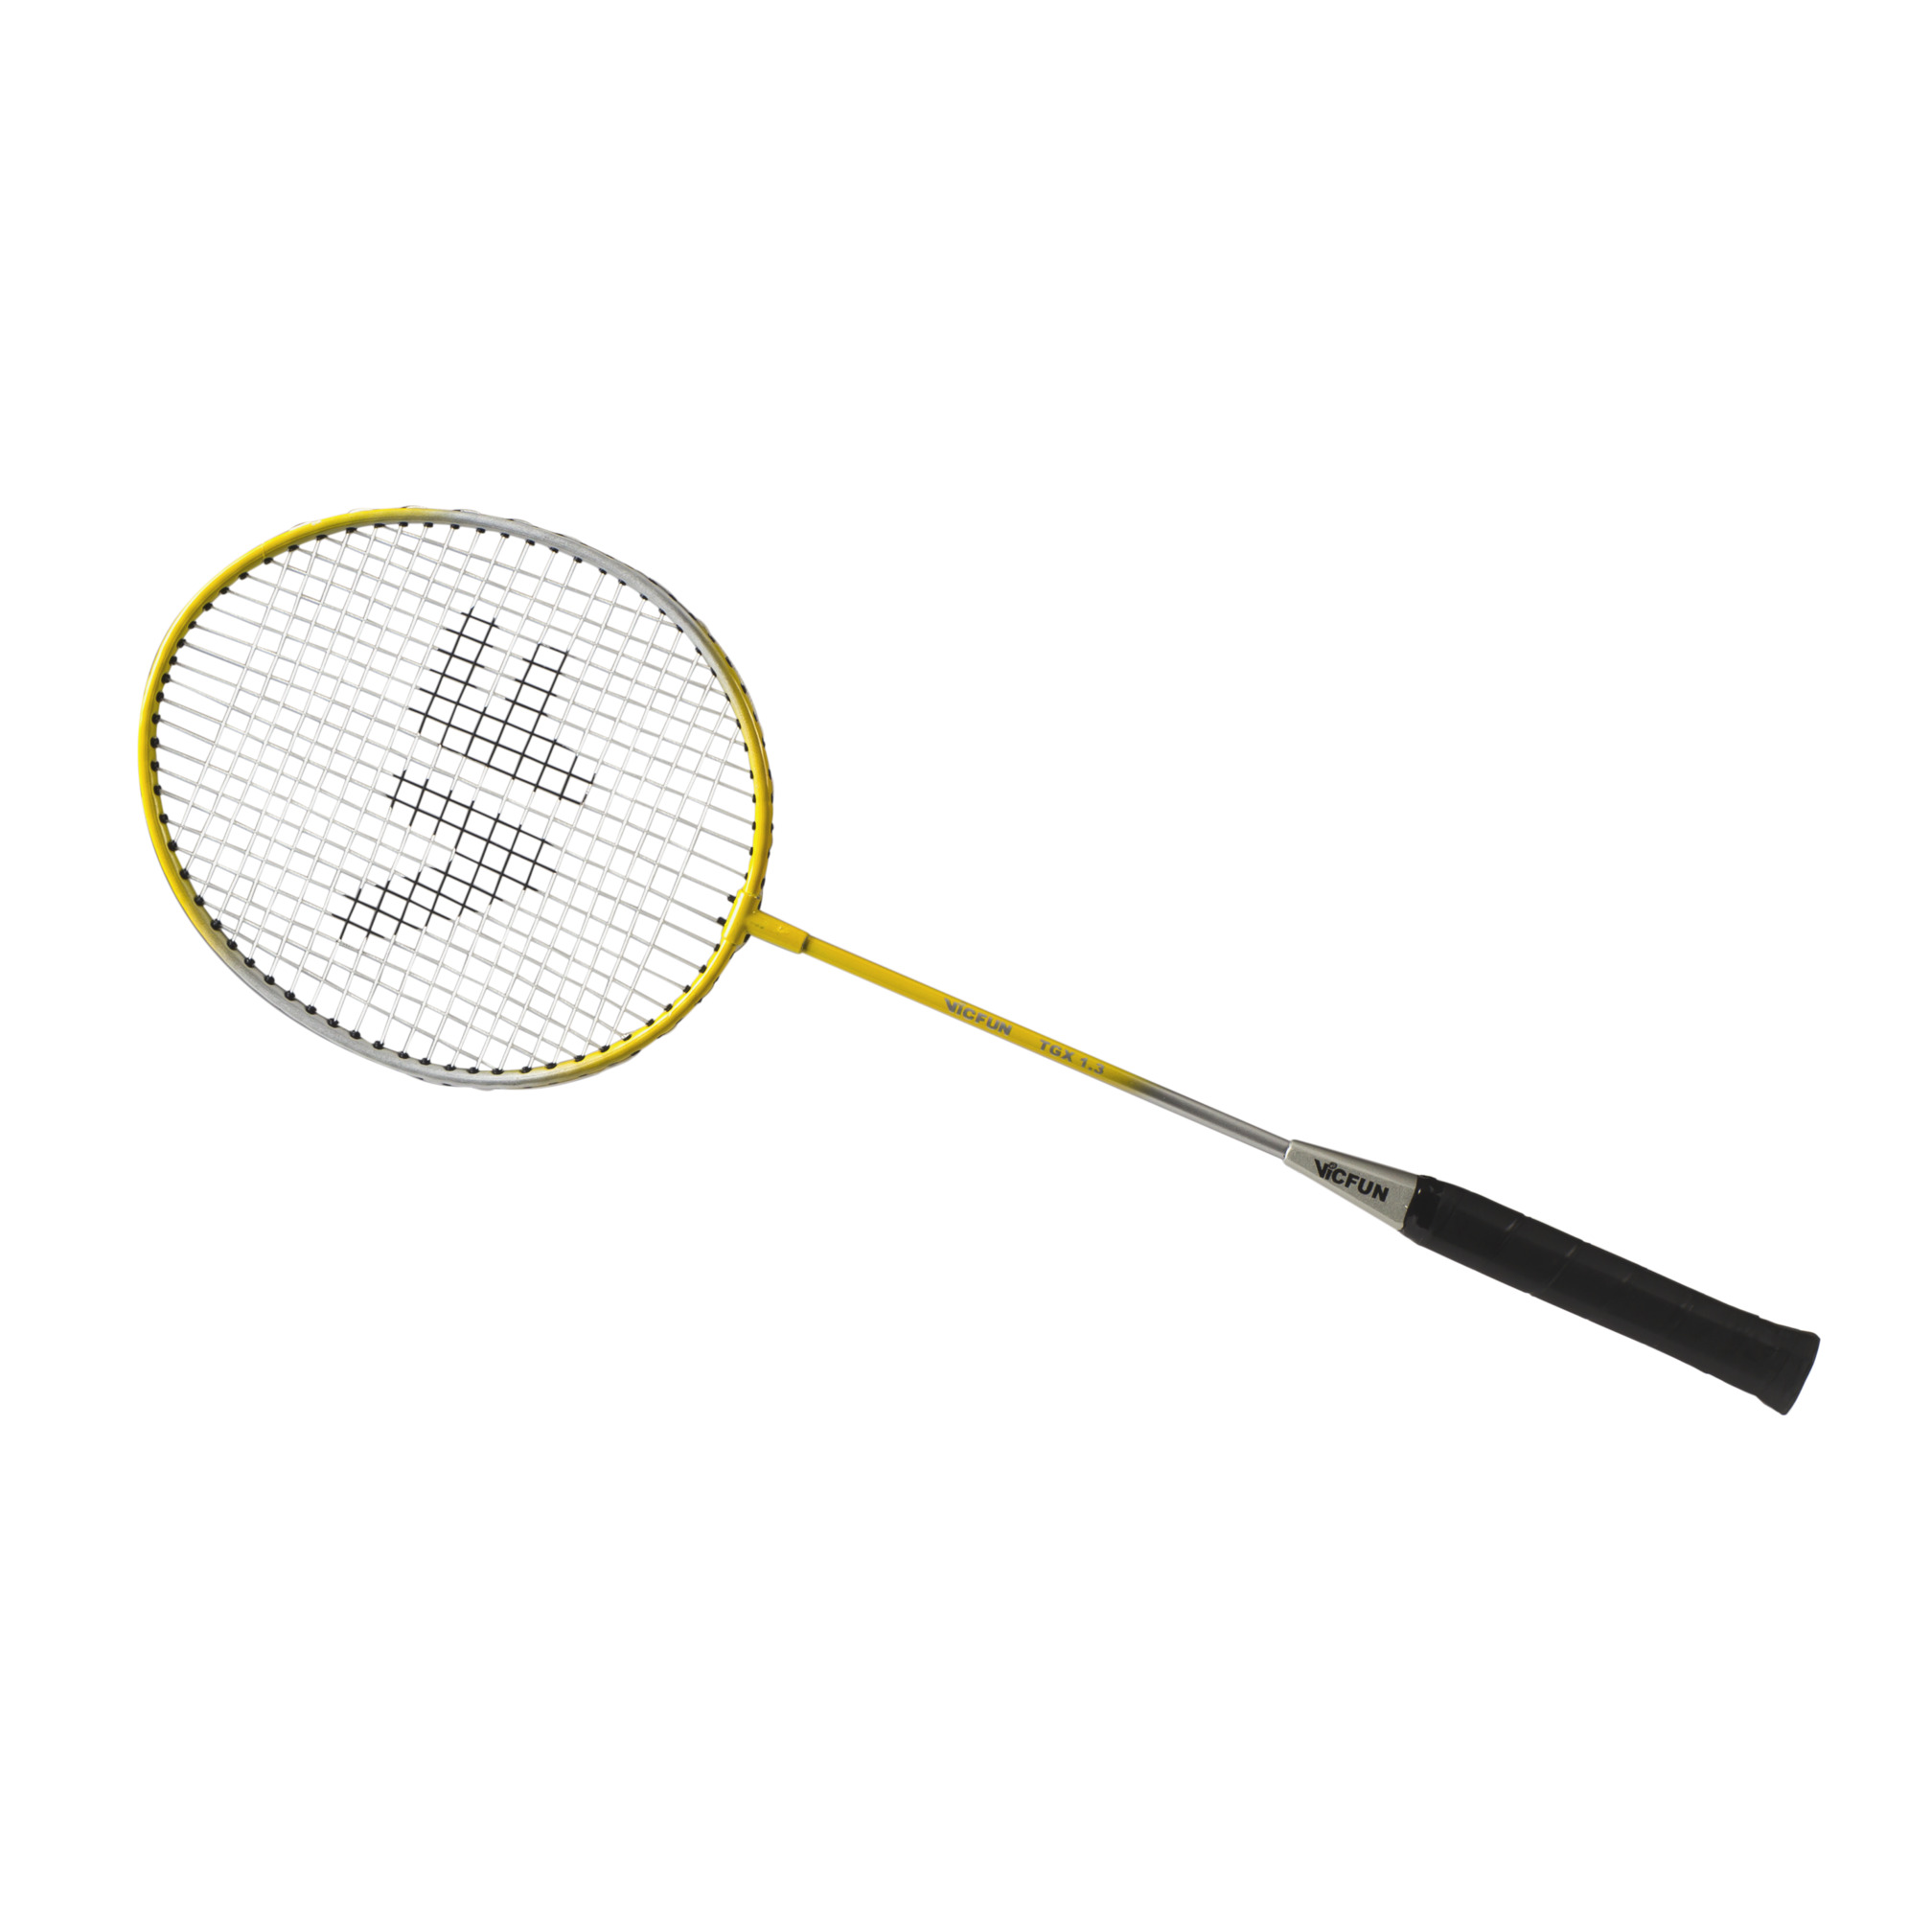 Raquette de badminton loisirs/scolaire